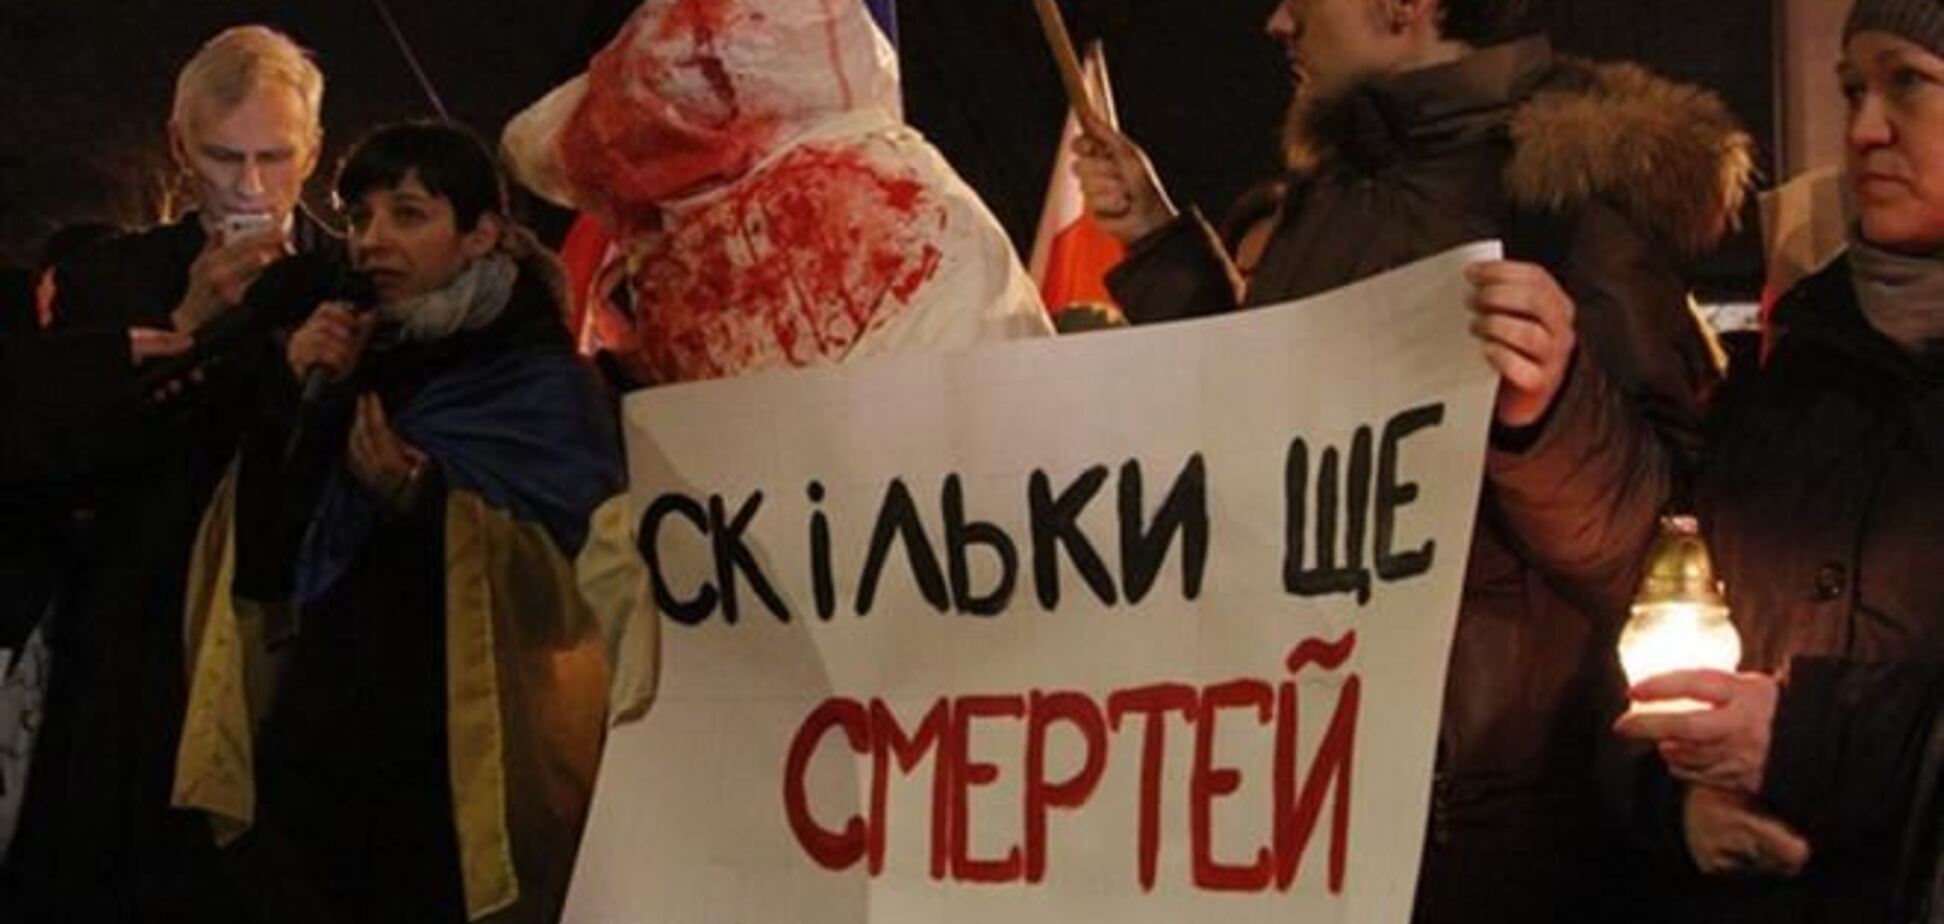 'Скільки ще смертей вам потрібно?' - Посольство України у Варшаві оточене мітингувальниками